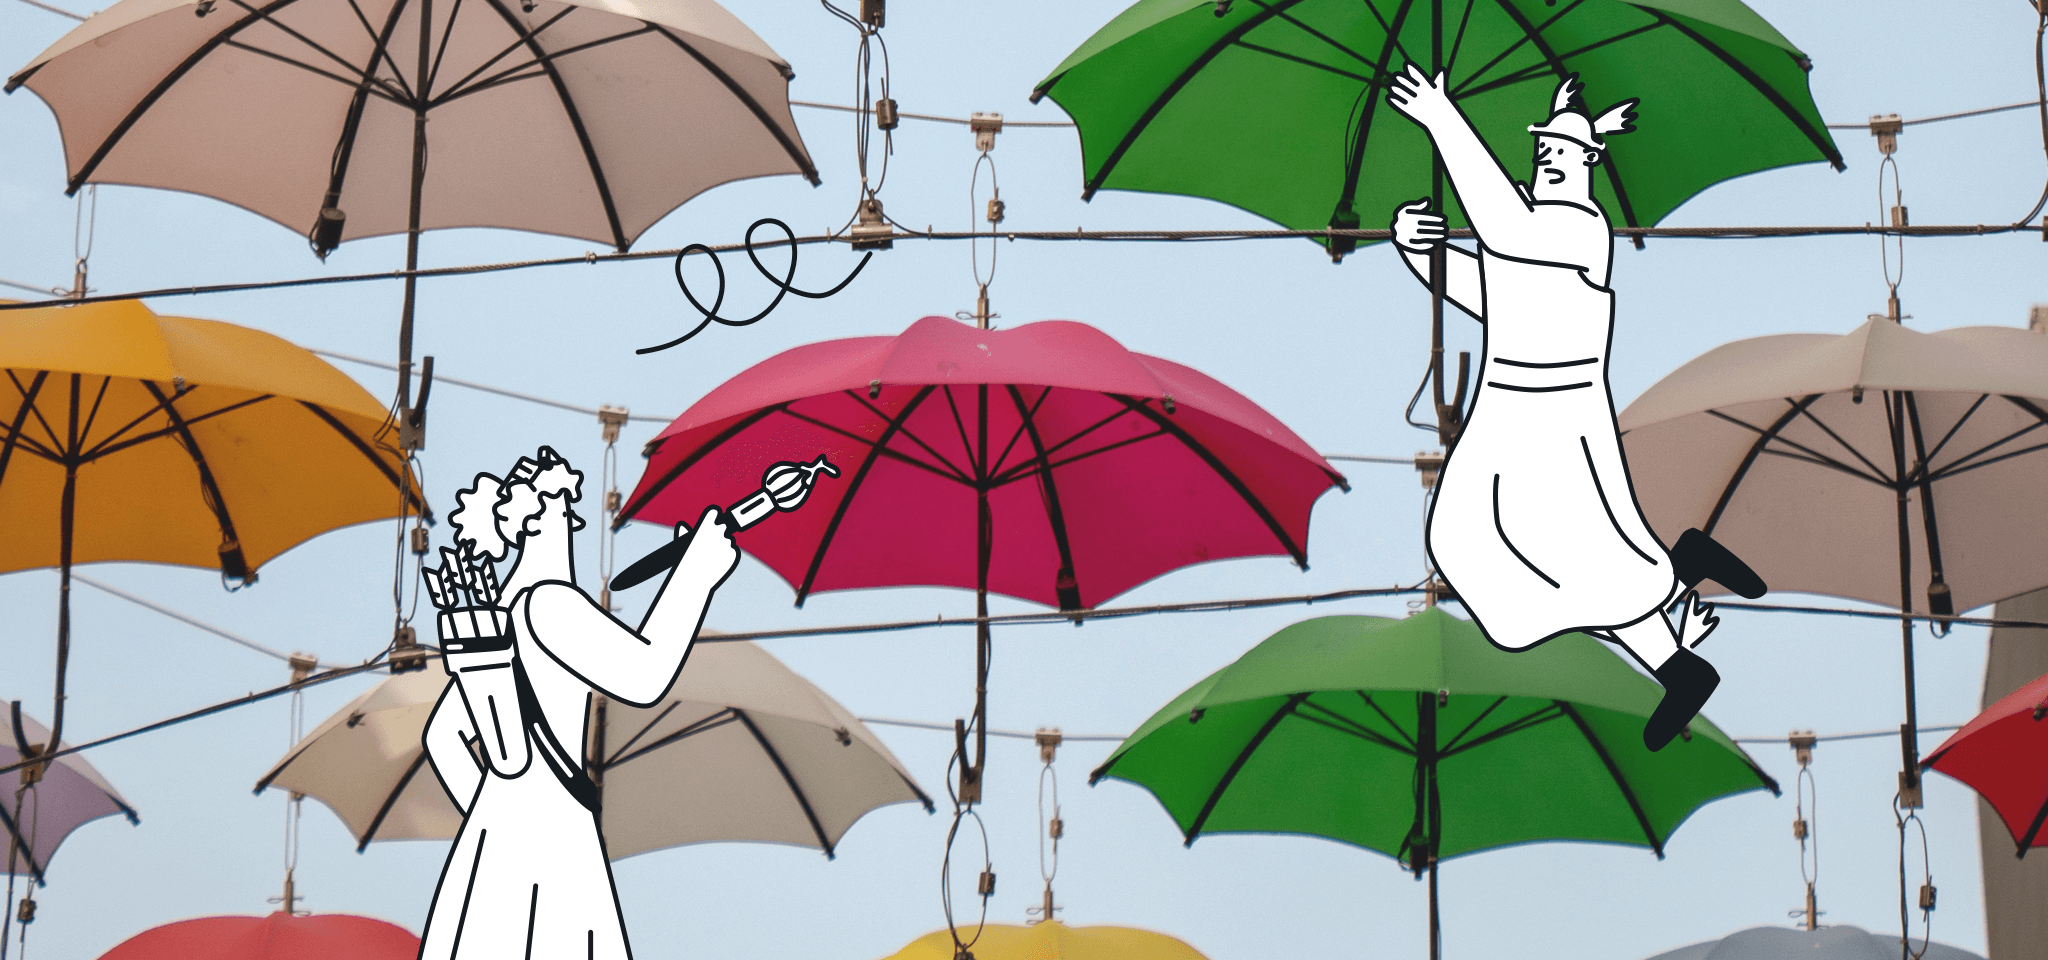 Hermès suspendu à un parapluie pendant qu'une déesse peint.